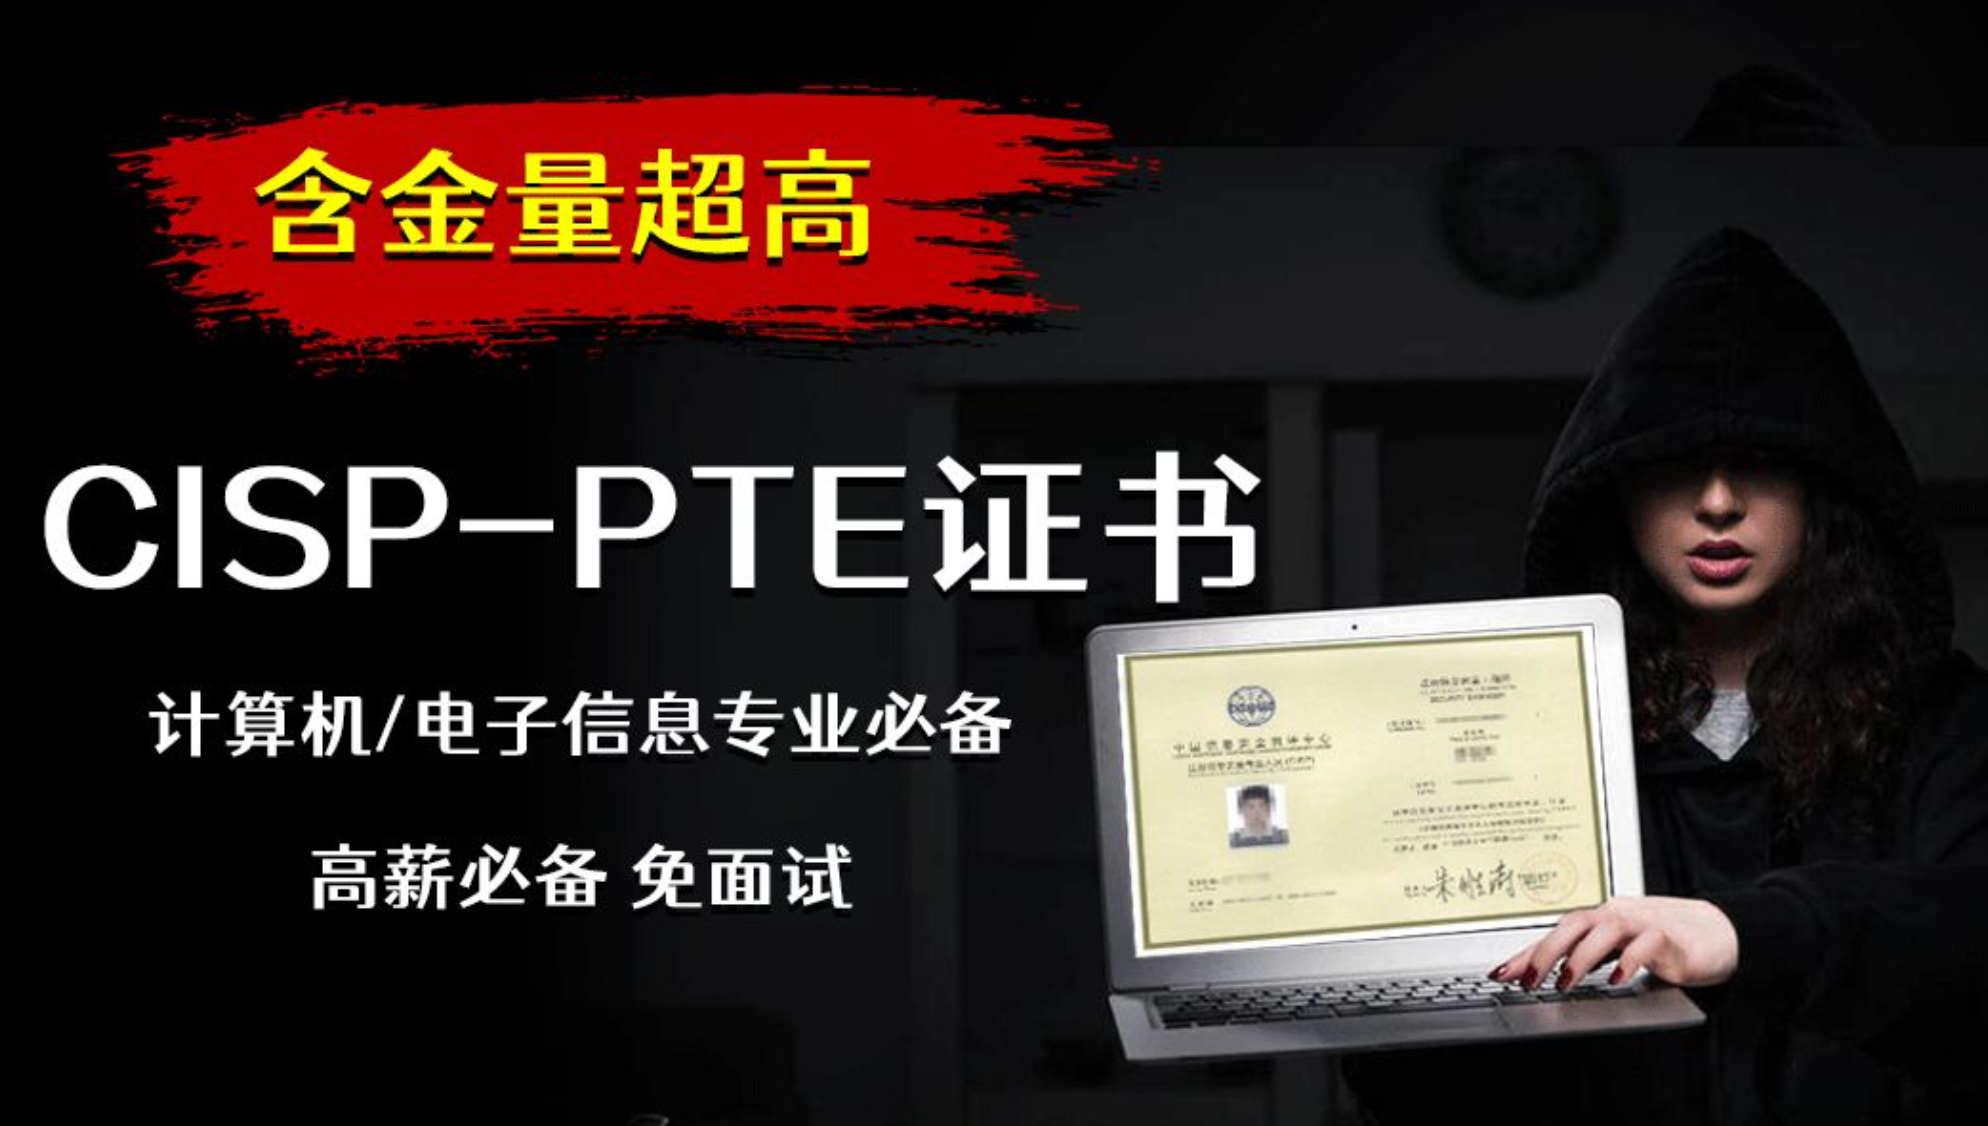 CISP-PTE证书的查询步骤